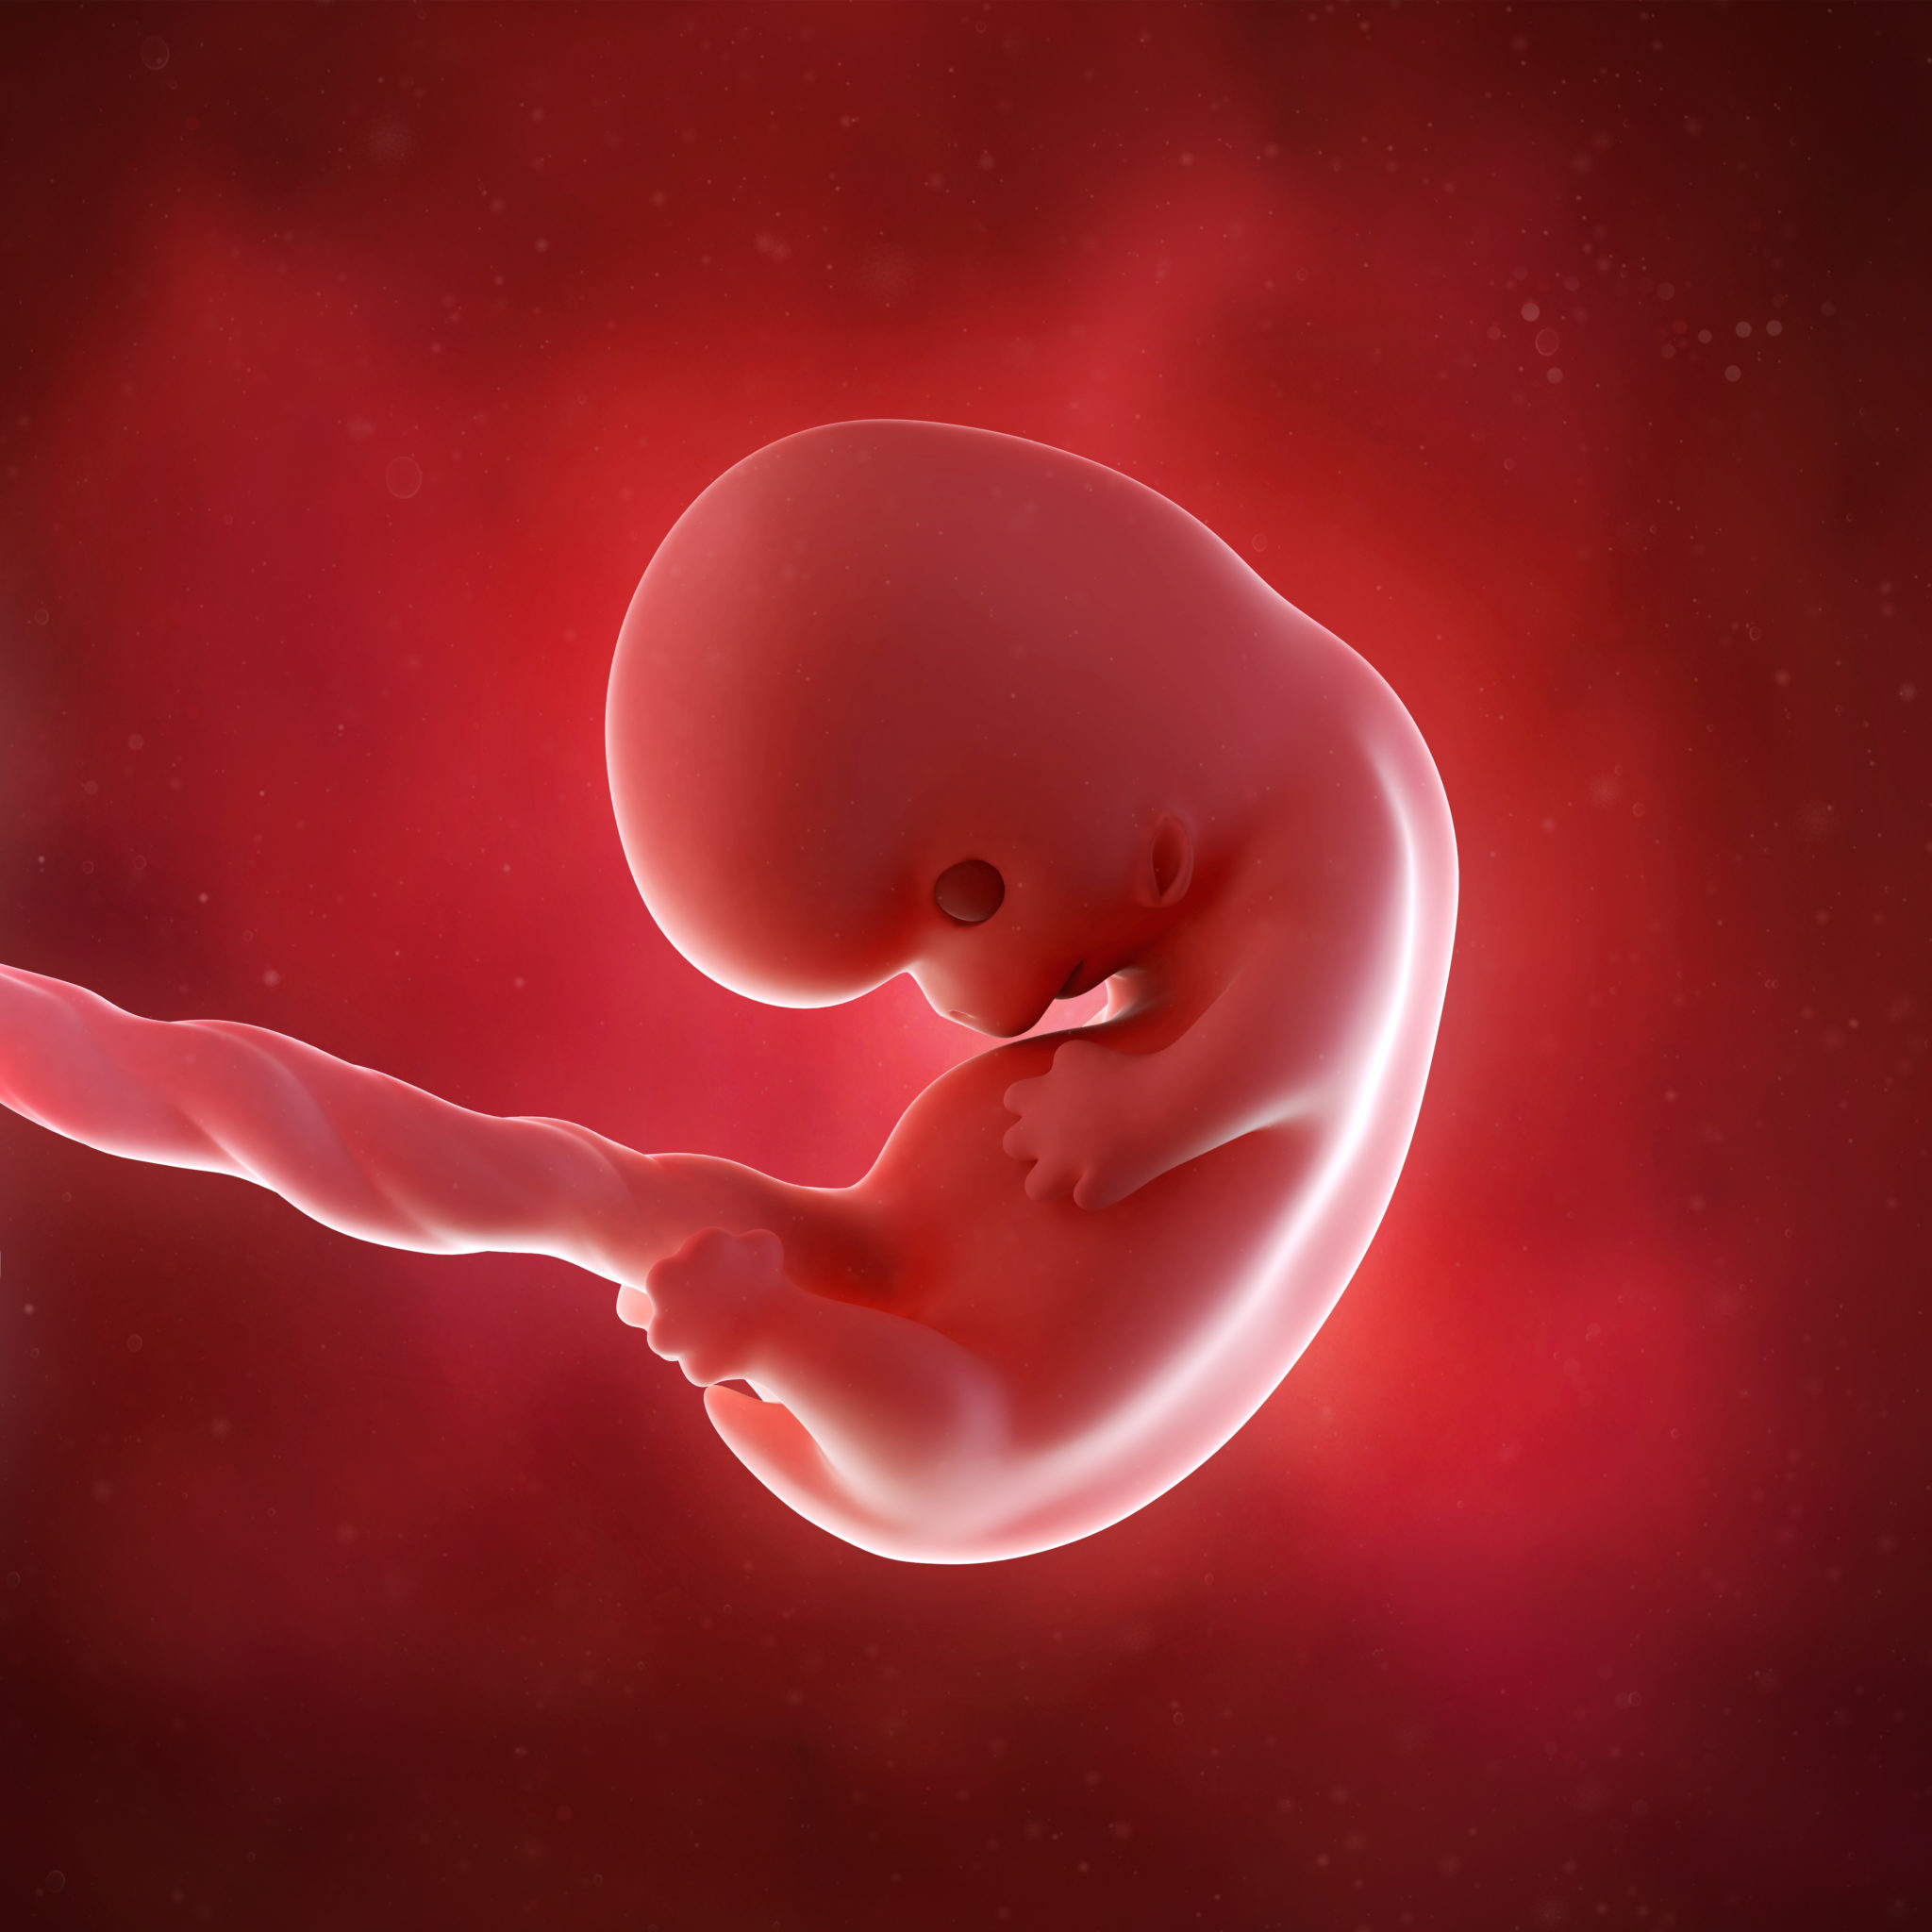 Через 6 8 недель. Эмбрион на 8 неделе беременности. Зародыш 2-3 недели беременности.